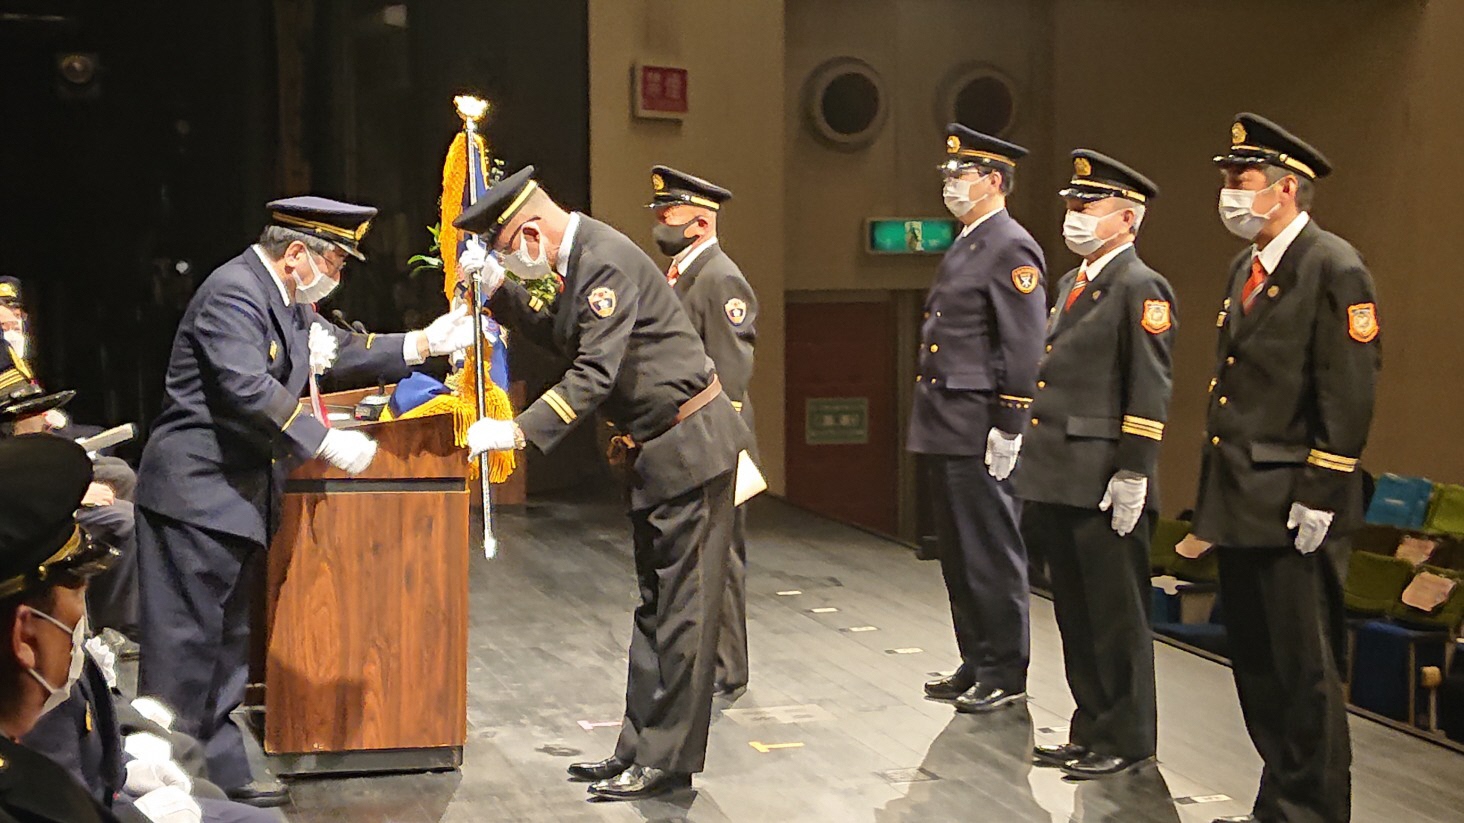 令和3年度大阪府知事表彰で優勝機関表彰の表彰旗を受領している写真